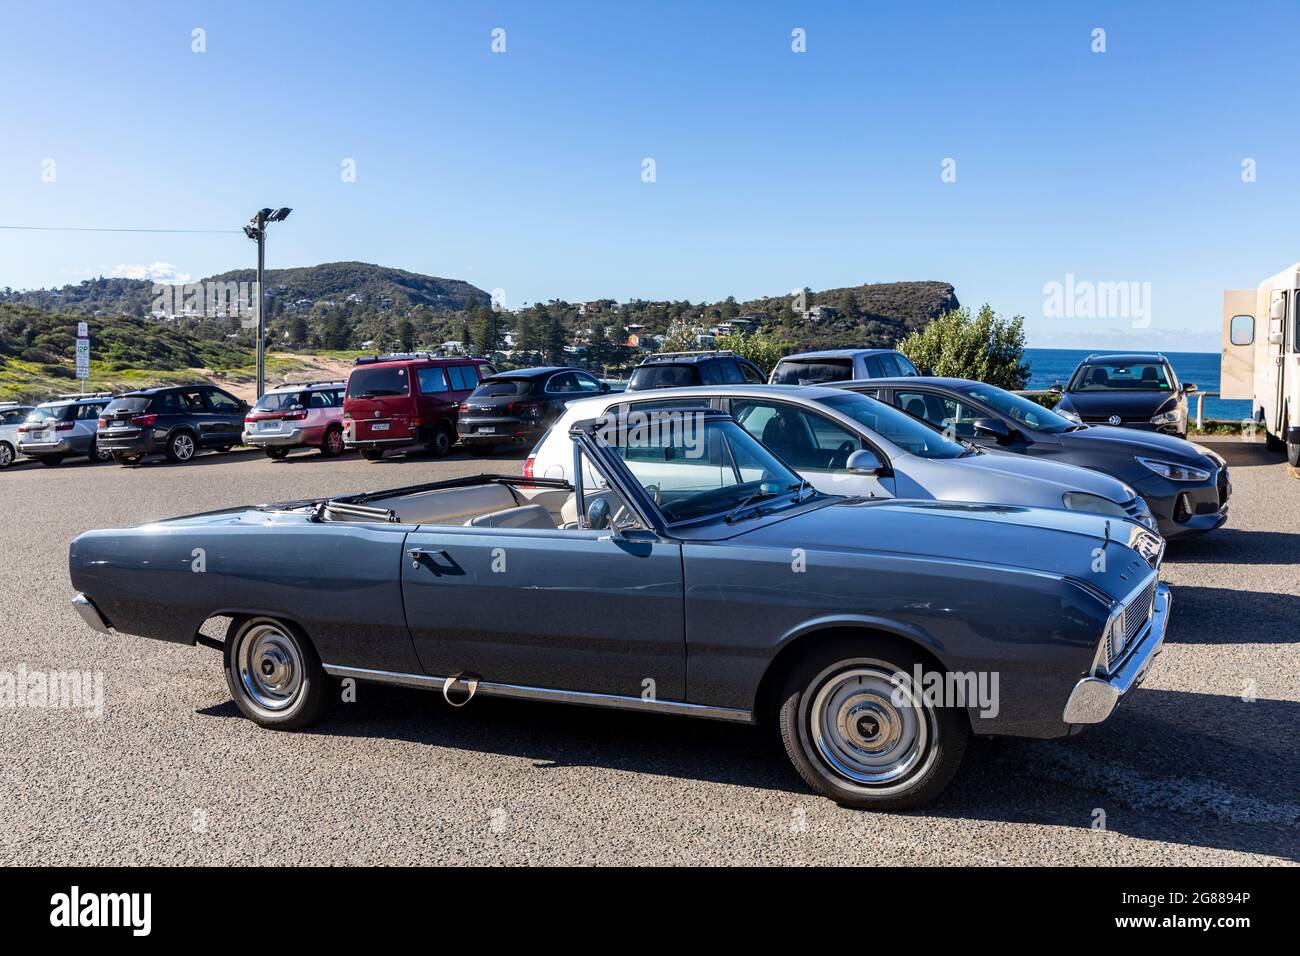 1970 Chrysler valant regal classique cabriolet capote souple voiture garée sur une plage de Sydney en Australie Banque D'Images